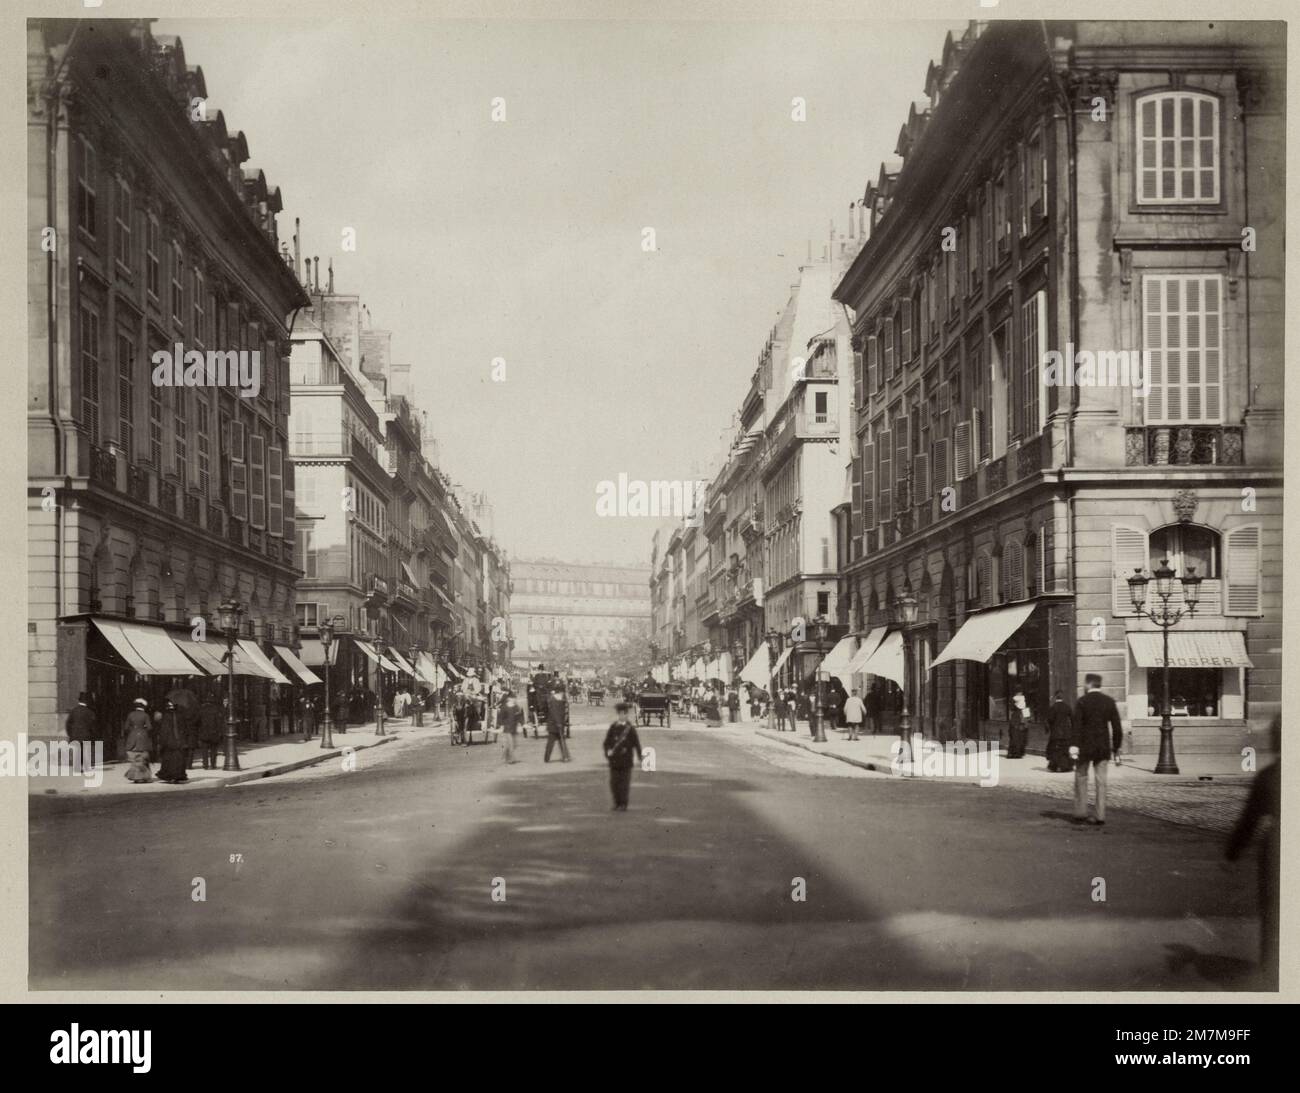 Vintage 19th c. photo - rue de la Paix, Paris, France Stock Photo